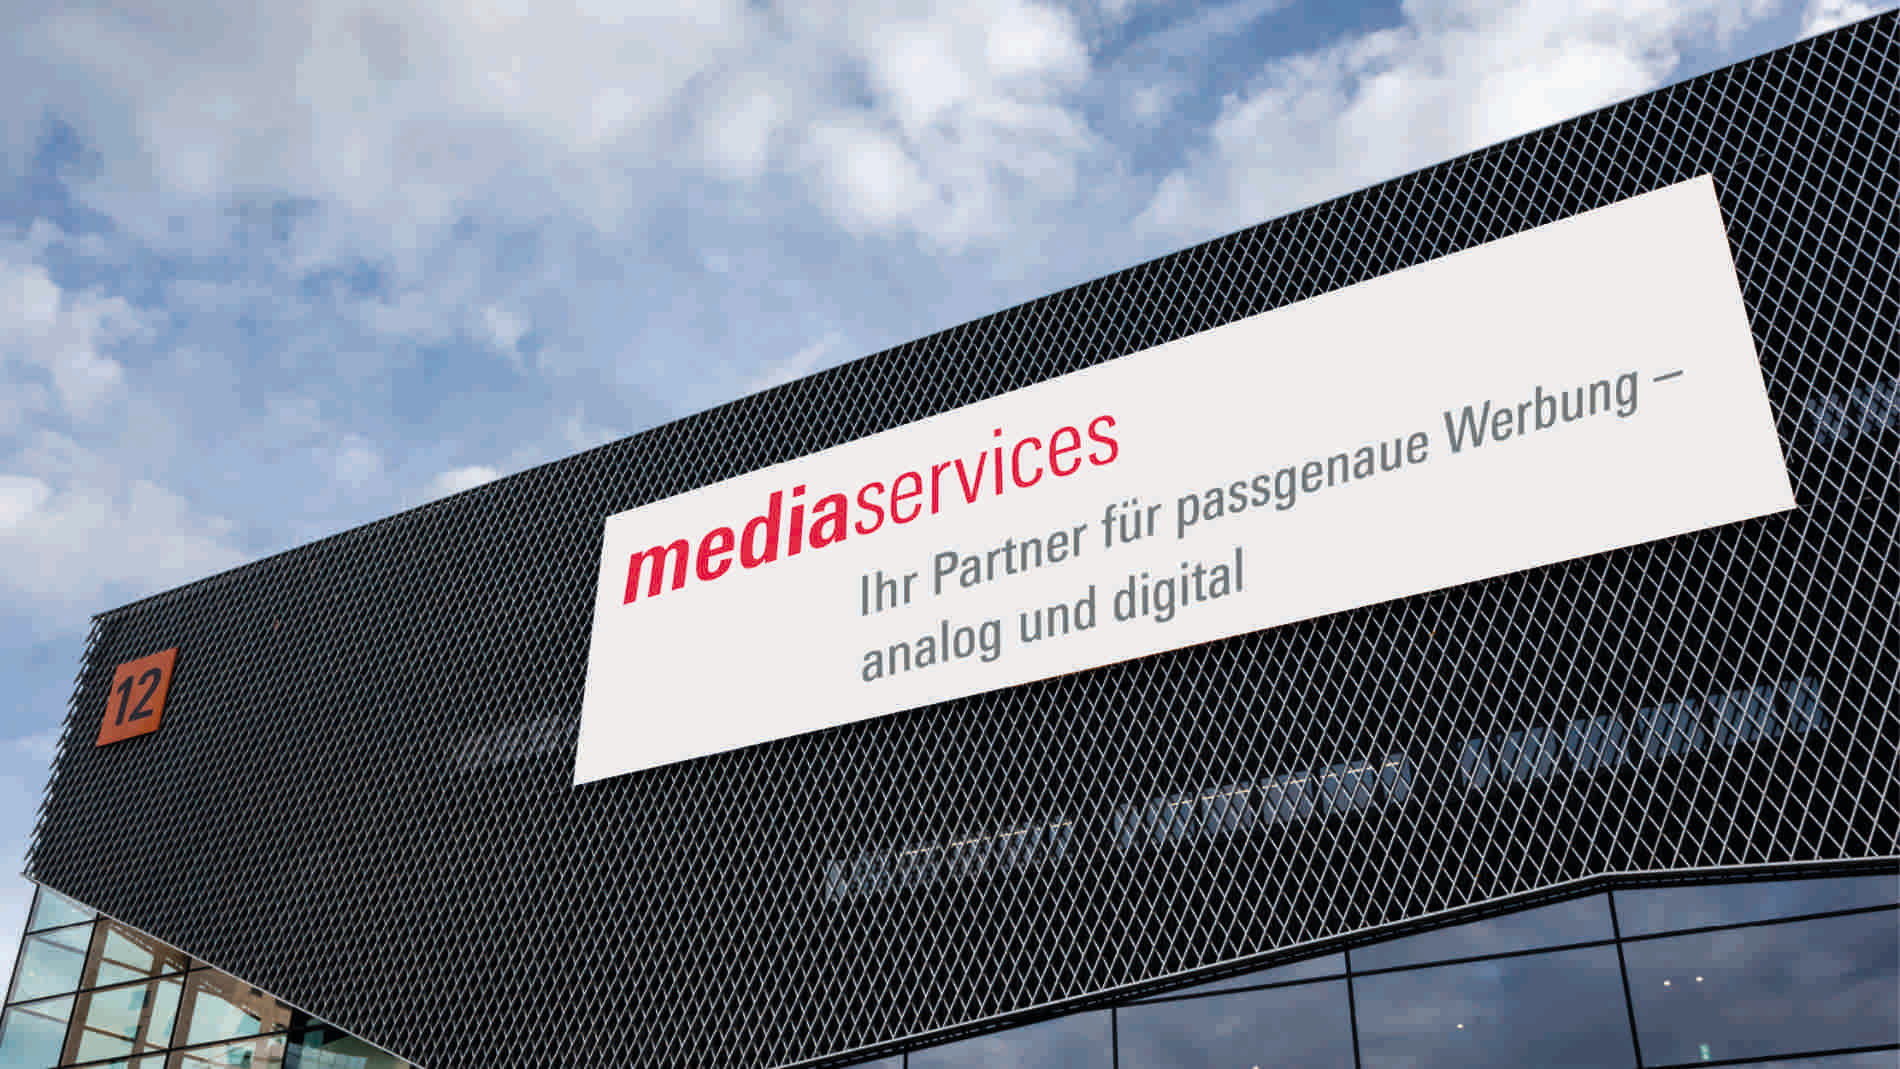 Media Services – Werbung bei der Messe Frankfurt